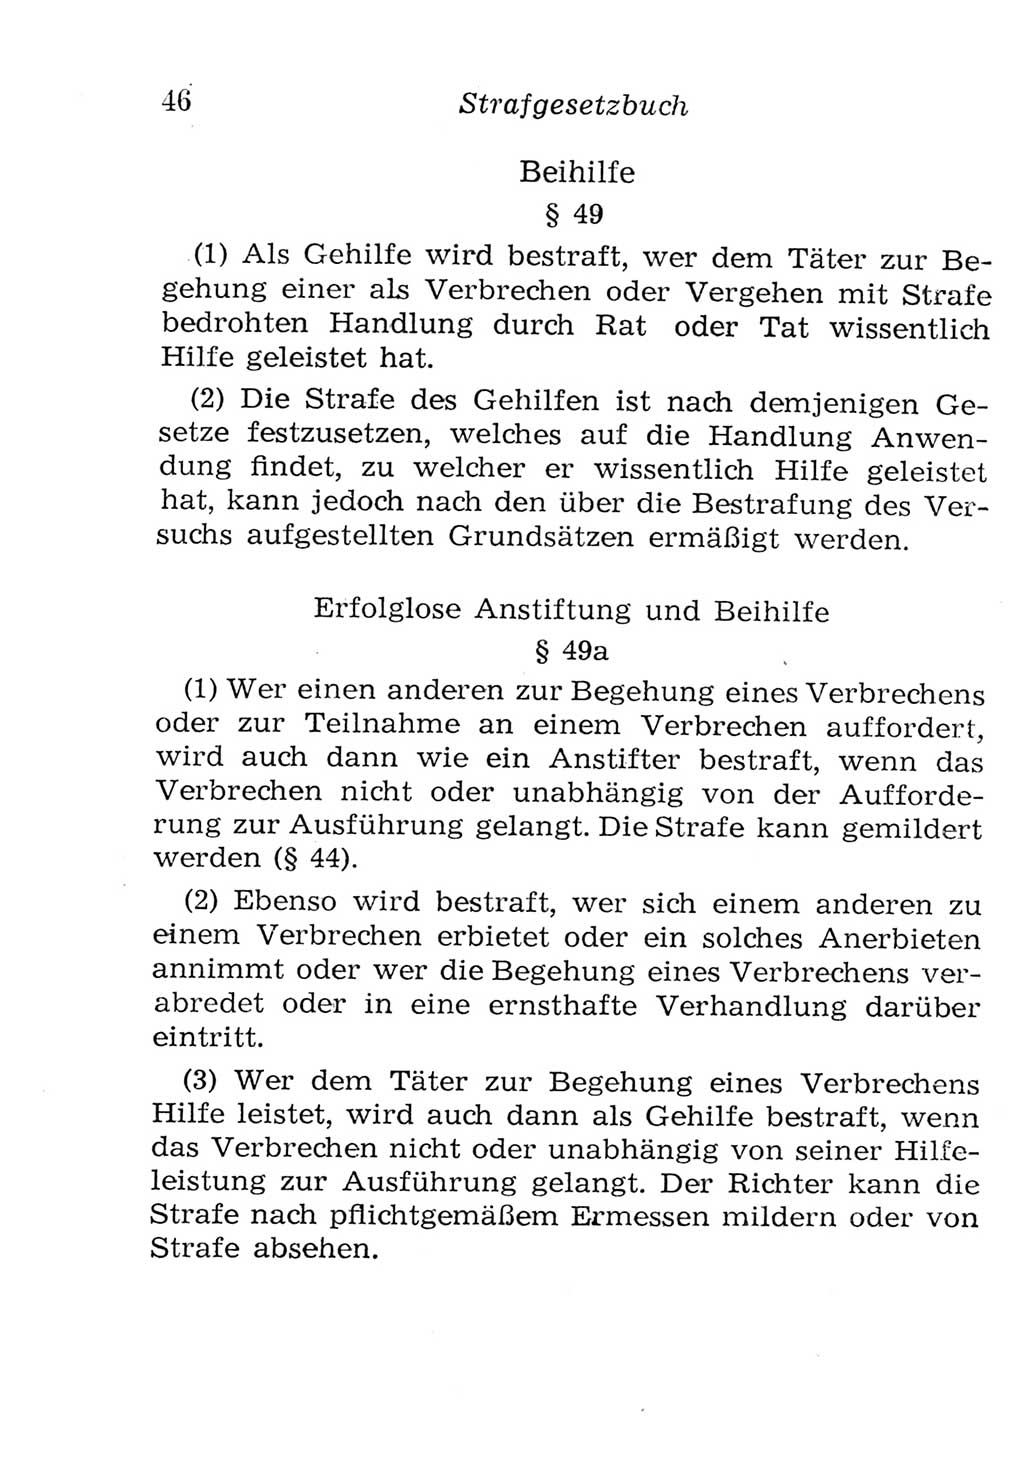 Strafgesetzbuch (StGB) und andere Strafgesetze [Deutsche Demokratische Republik (DDR)] 1957, Seite 46 (StGB Strafges. DDR 1957, S. 46)